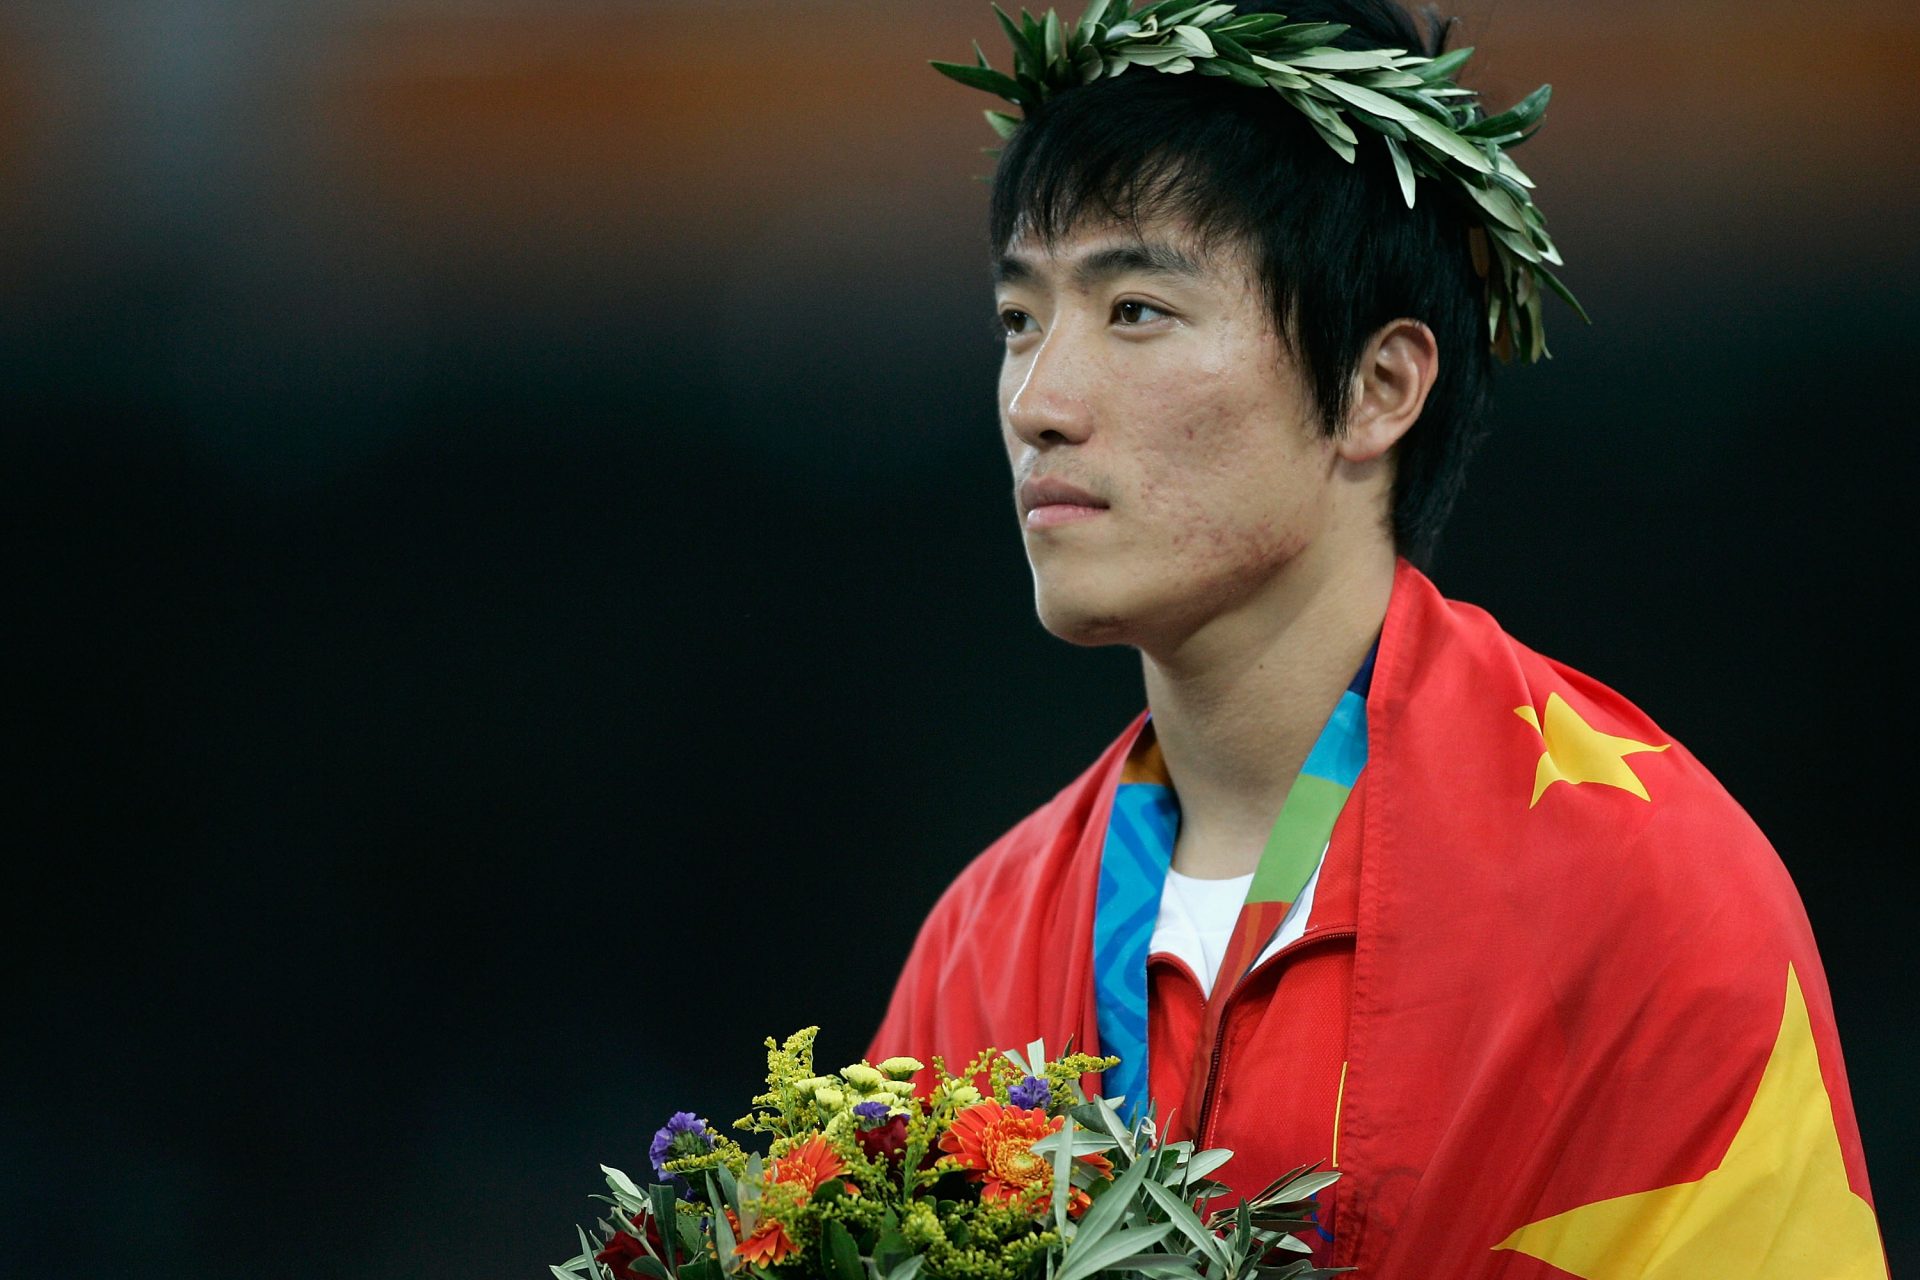 Liu Xiang, 2008 National hero